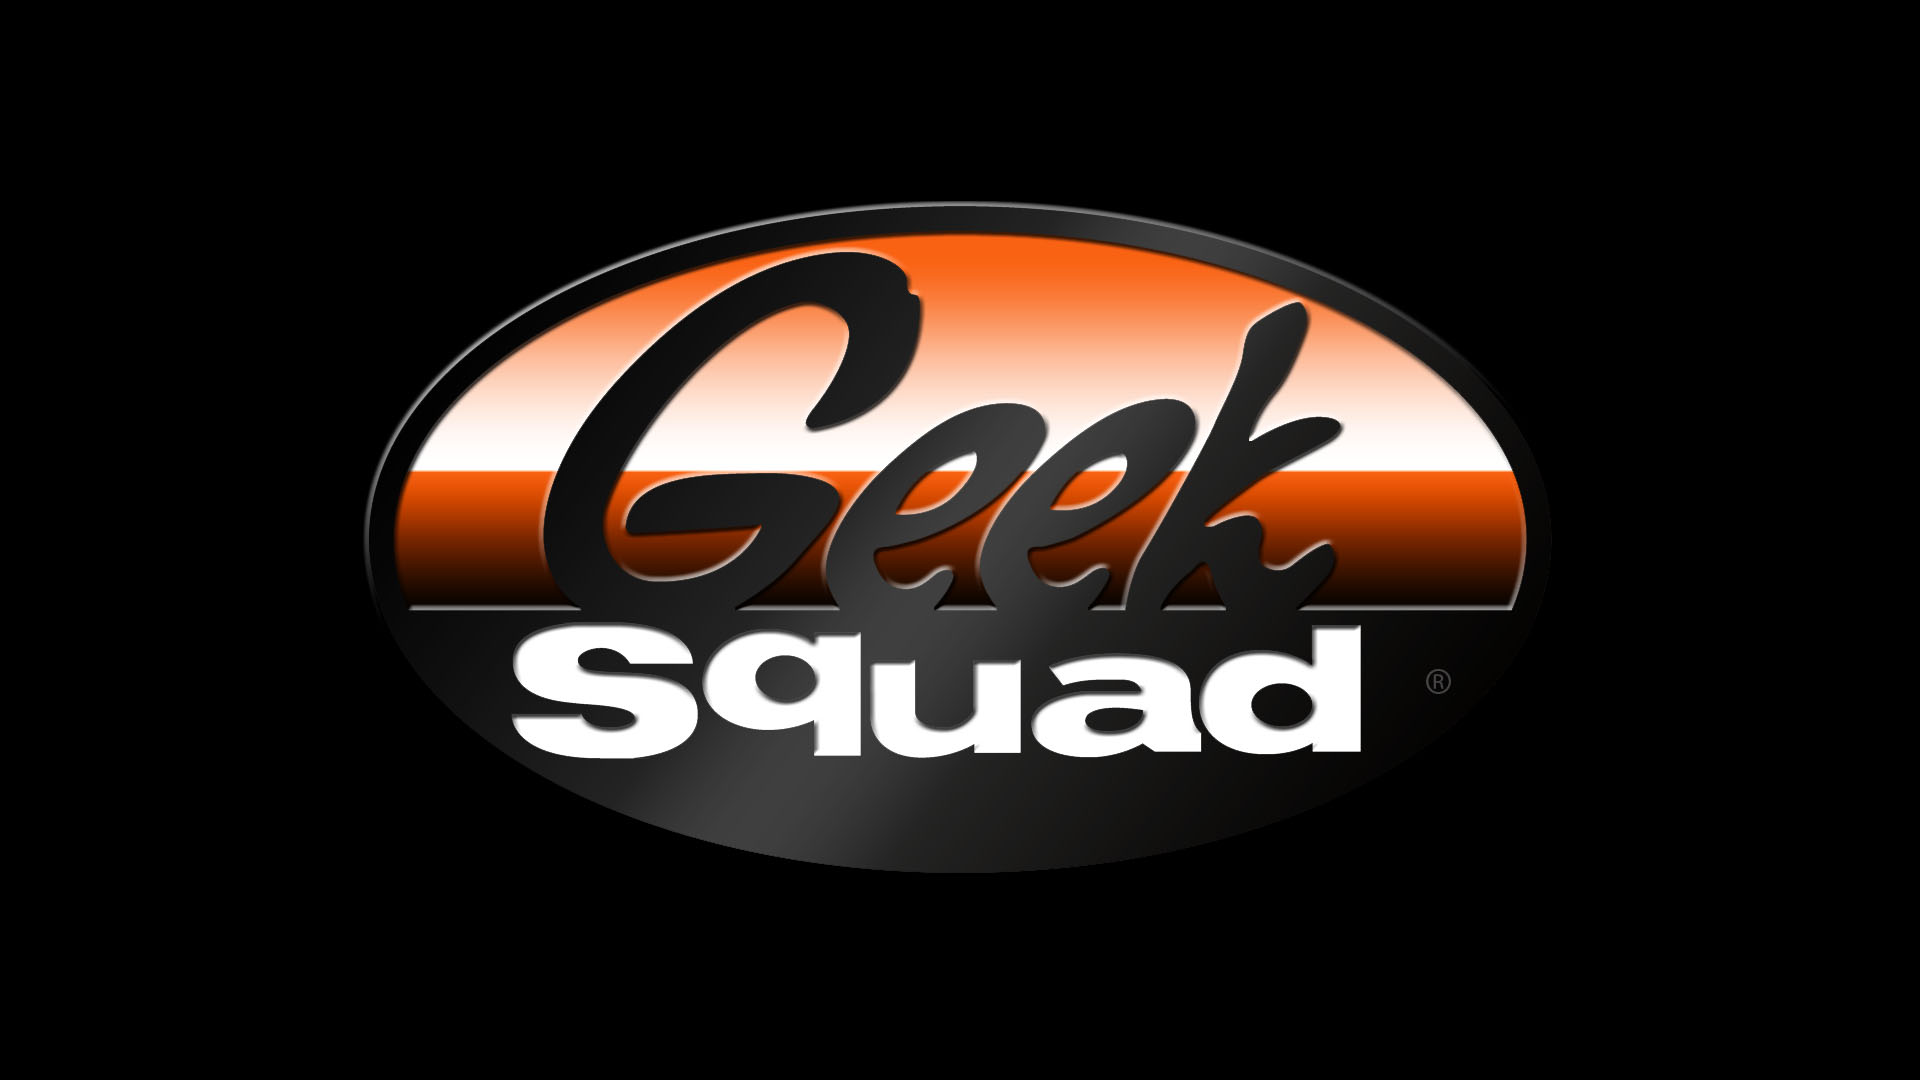 geek squad mri 5110 soldierx